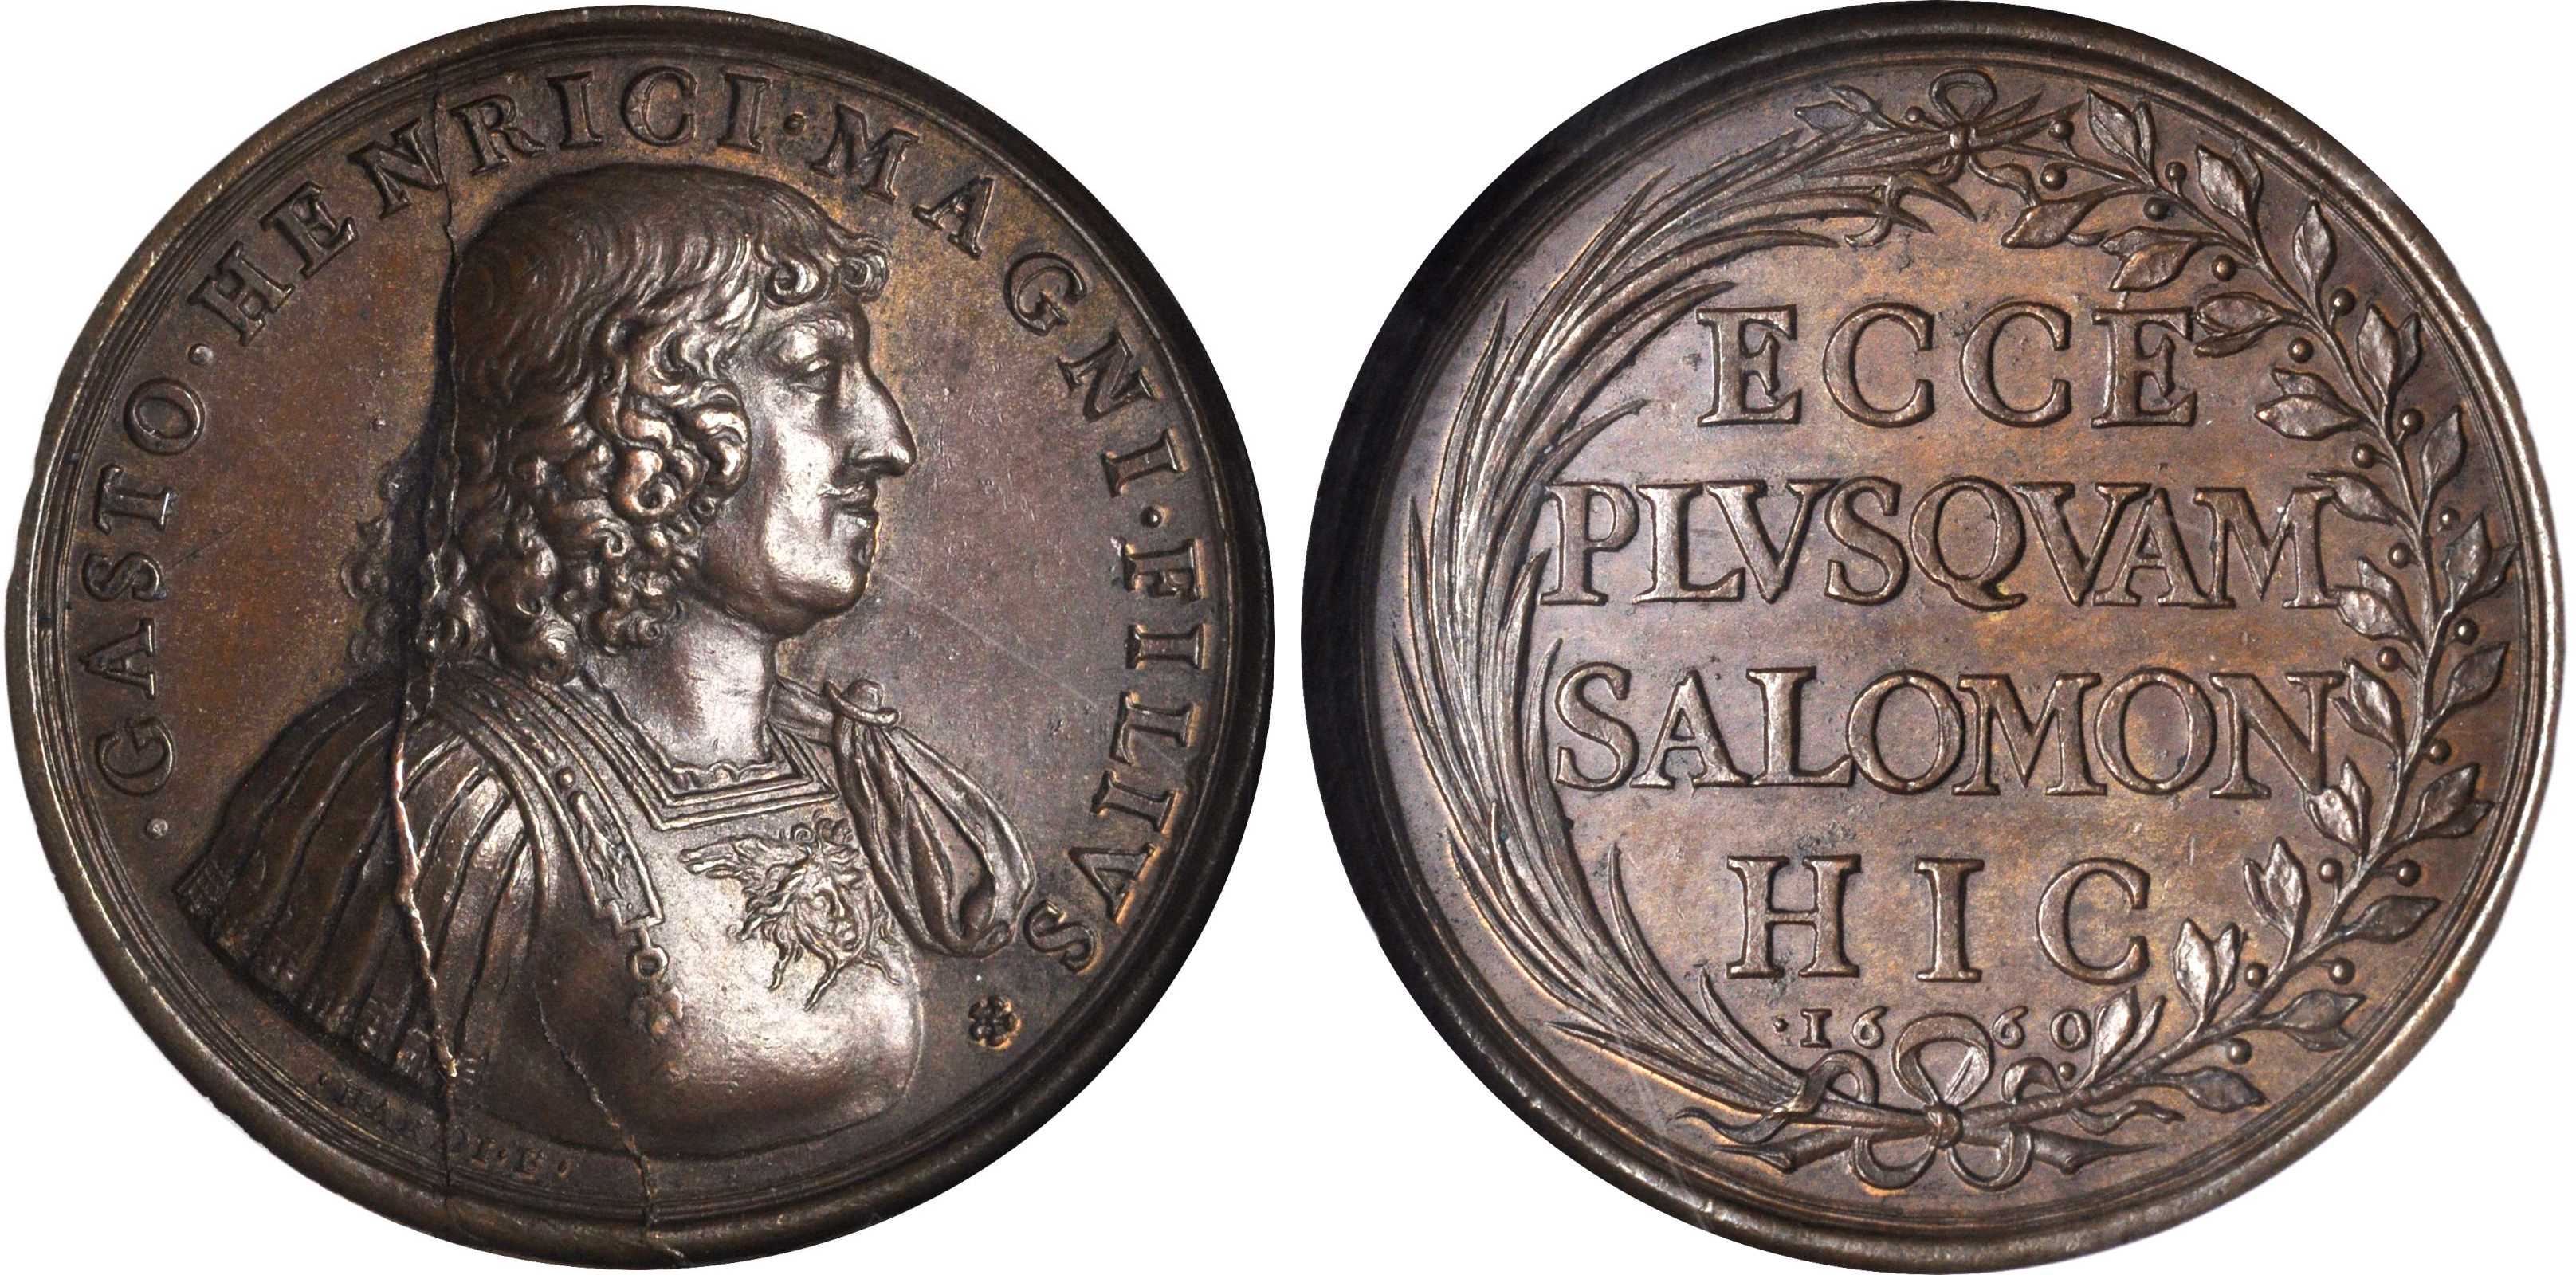 File:Gaston d'Orléans medal.jpg